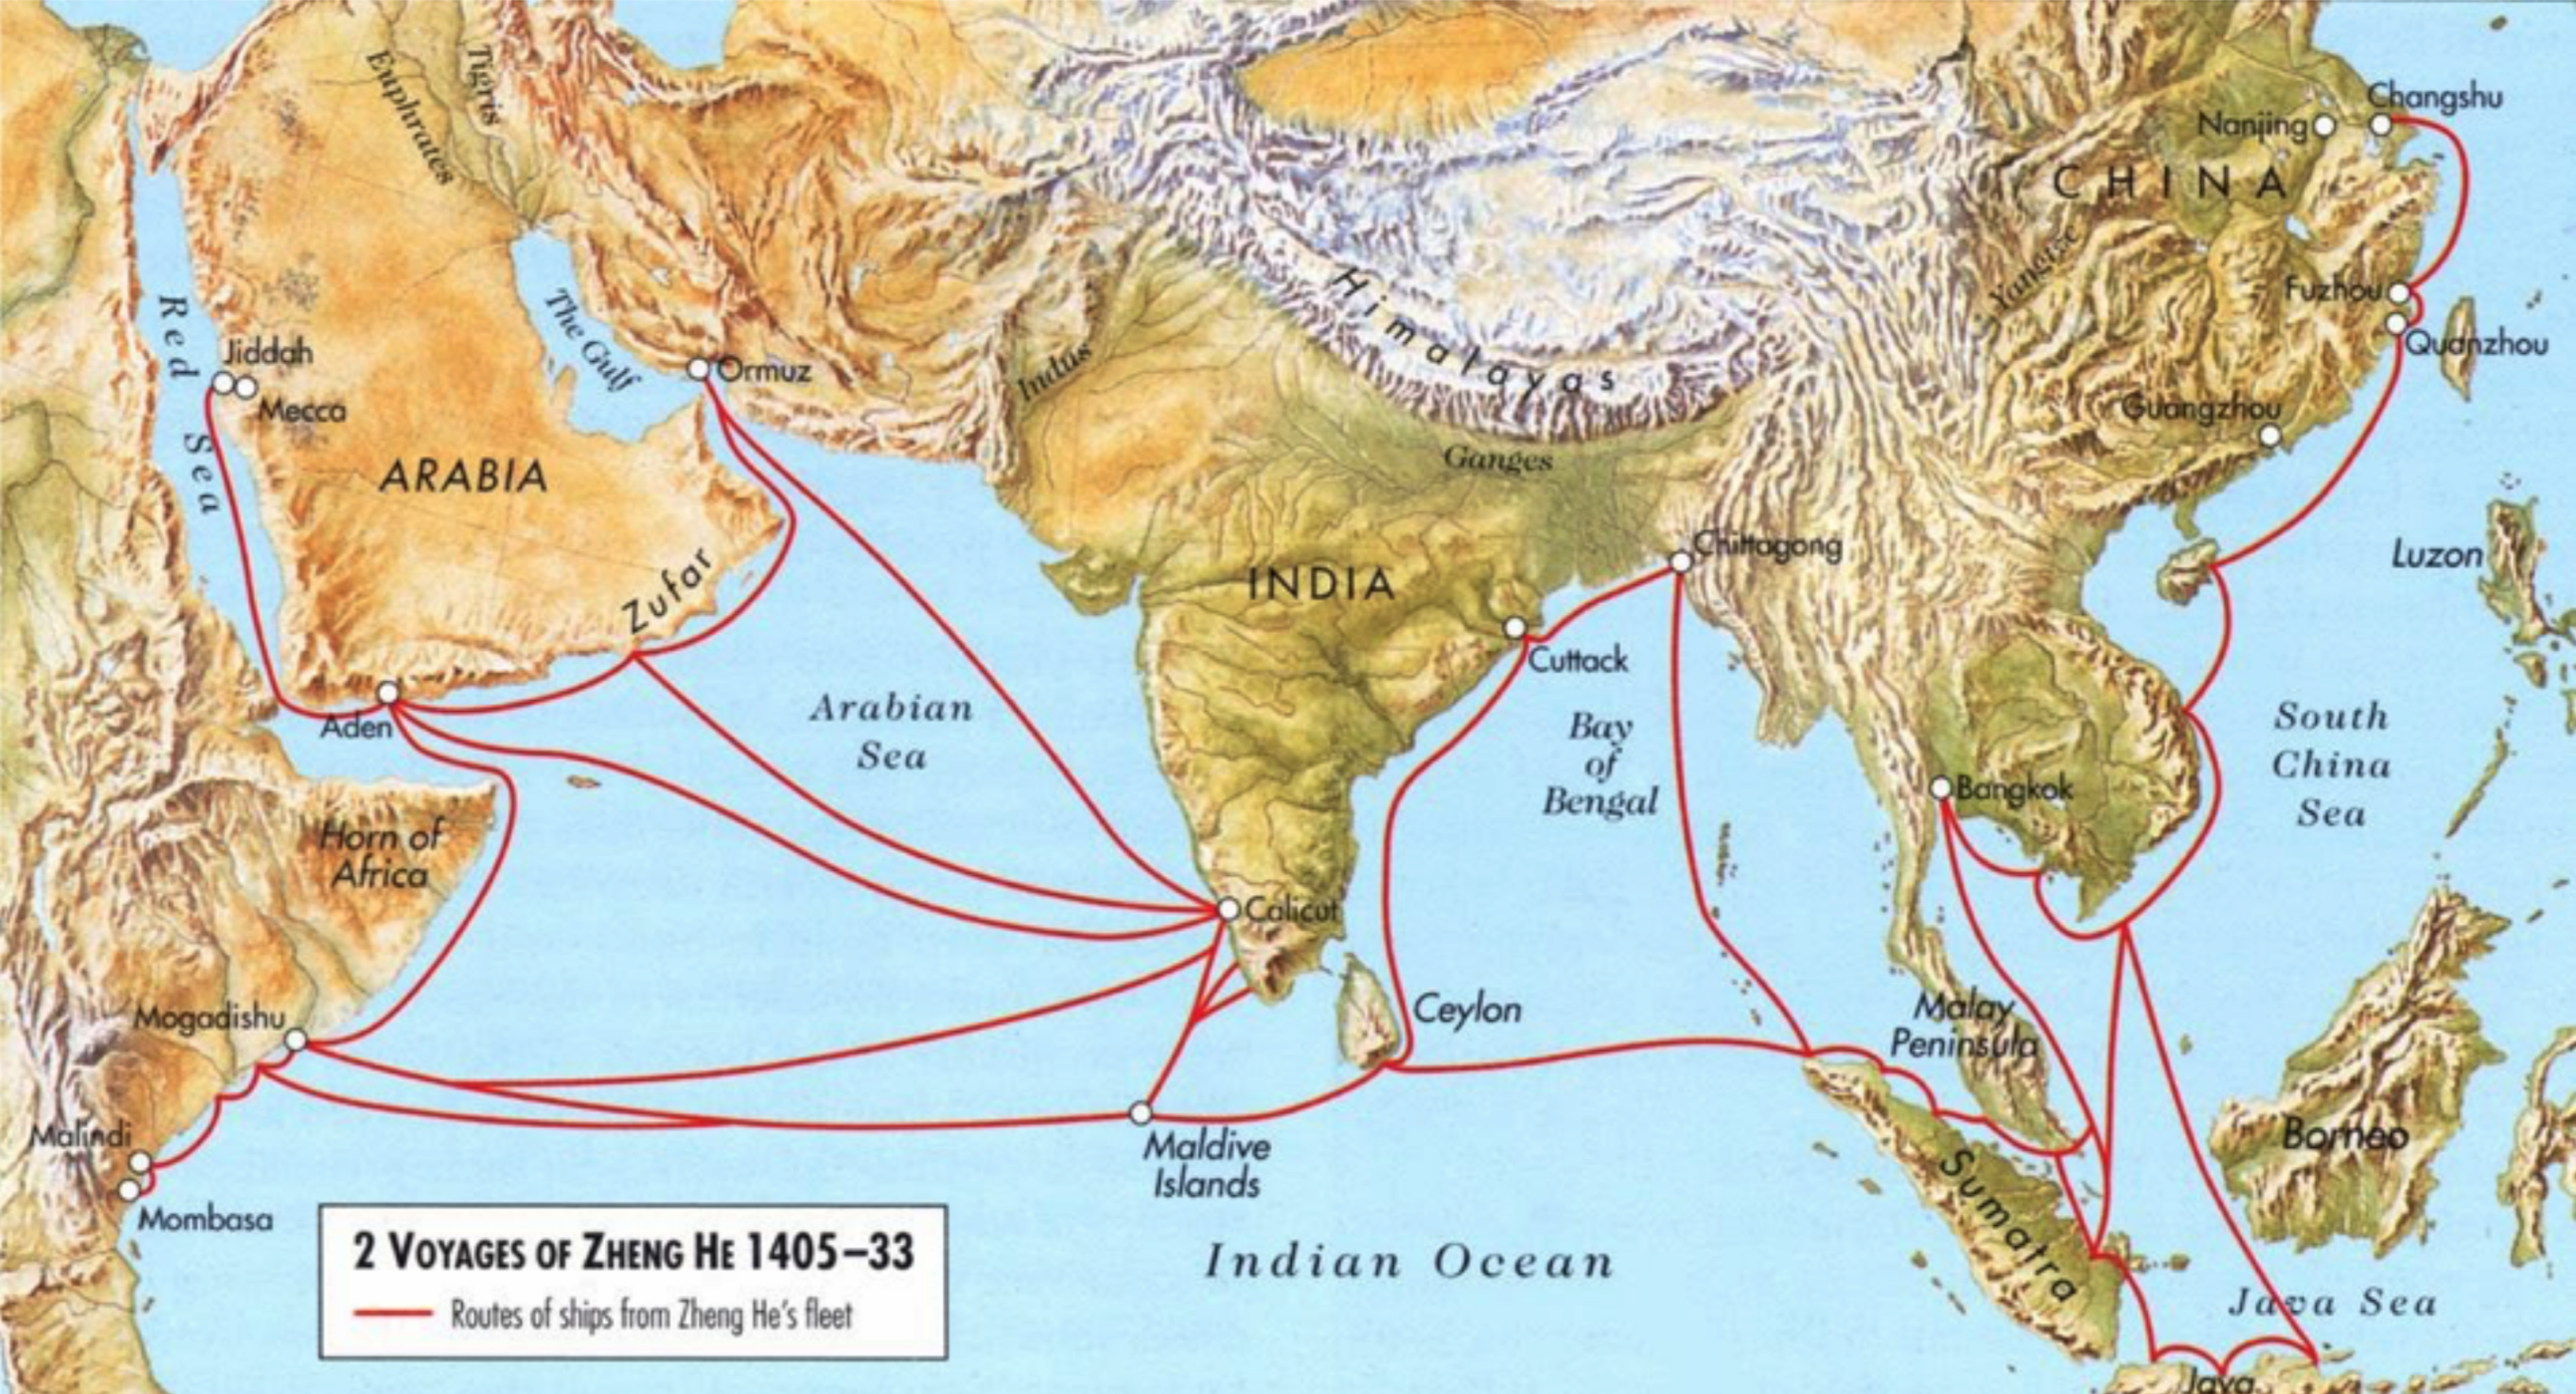 Джан хе. Морские экспедиции Чжэн Хэ. Путешествия Чжэн Хэ. Китайский Адмирал Чжэн Хэ. Семь путешествий Чжэн Хэ.